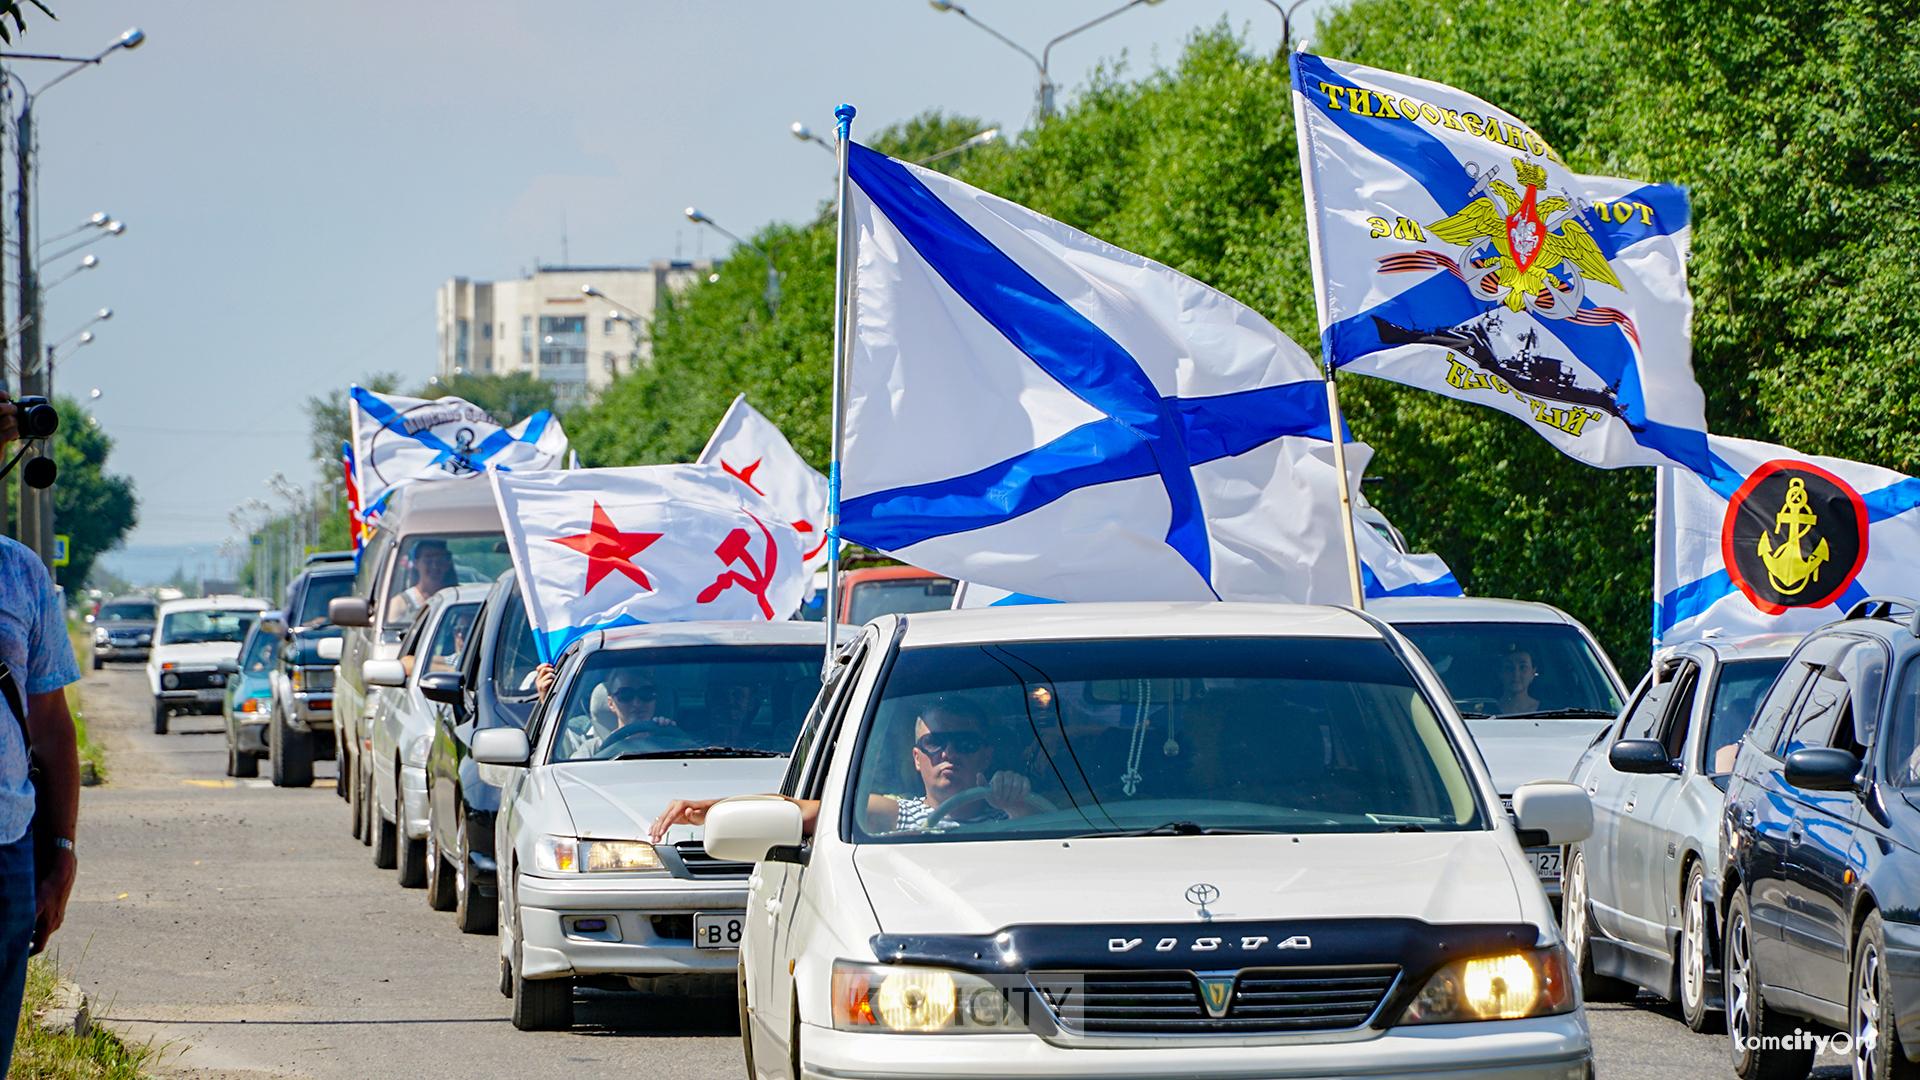 Автопробег в честь Дня ВМФ устроят в воскресенье в Комсомольске